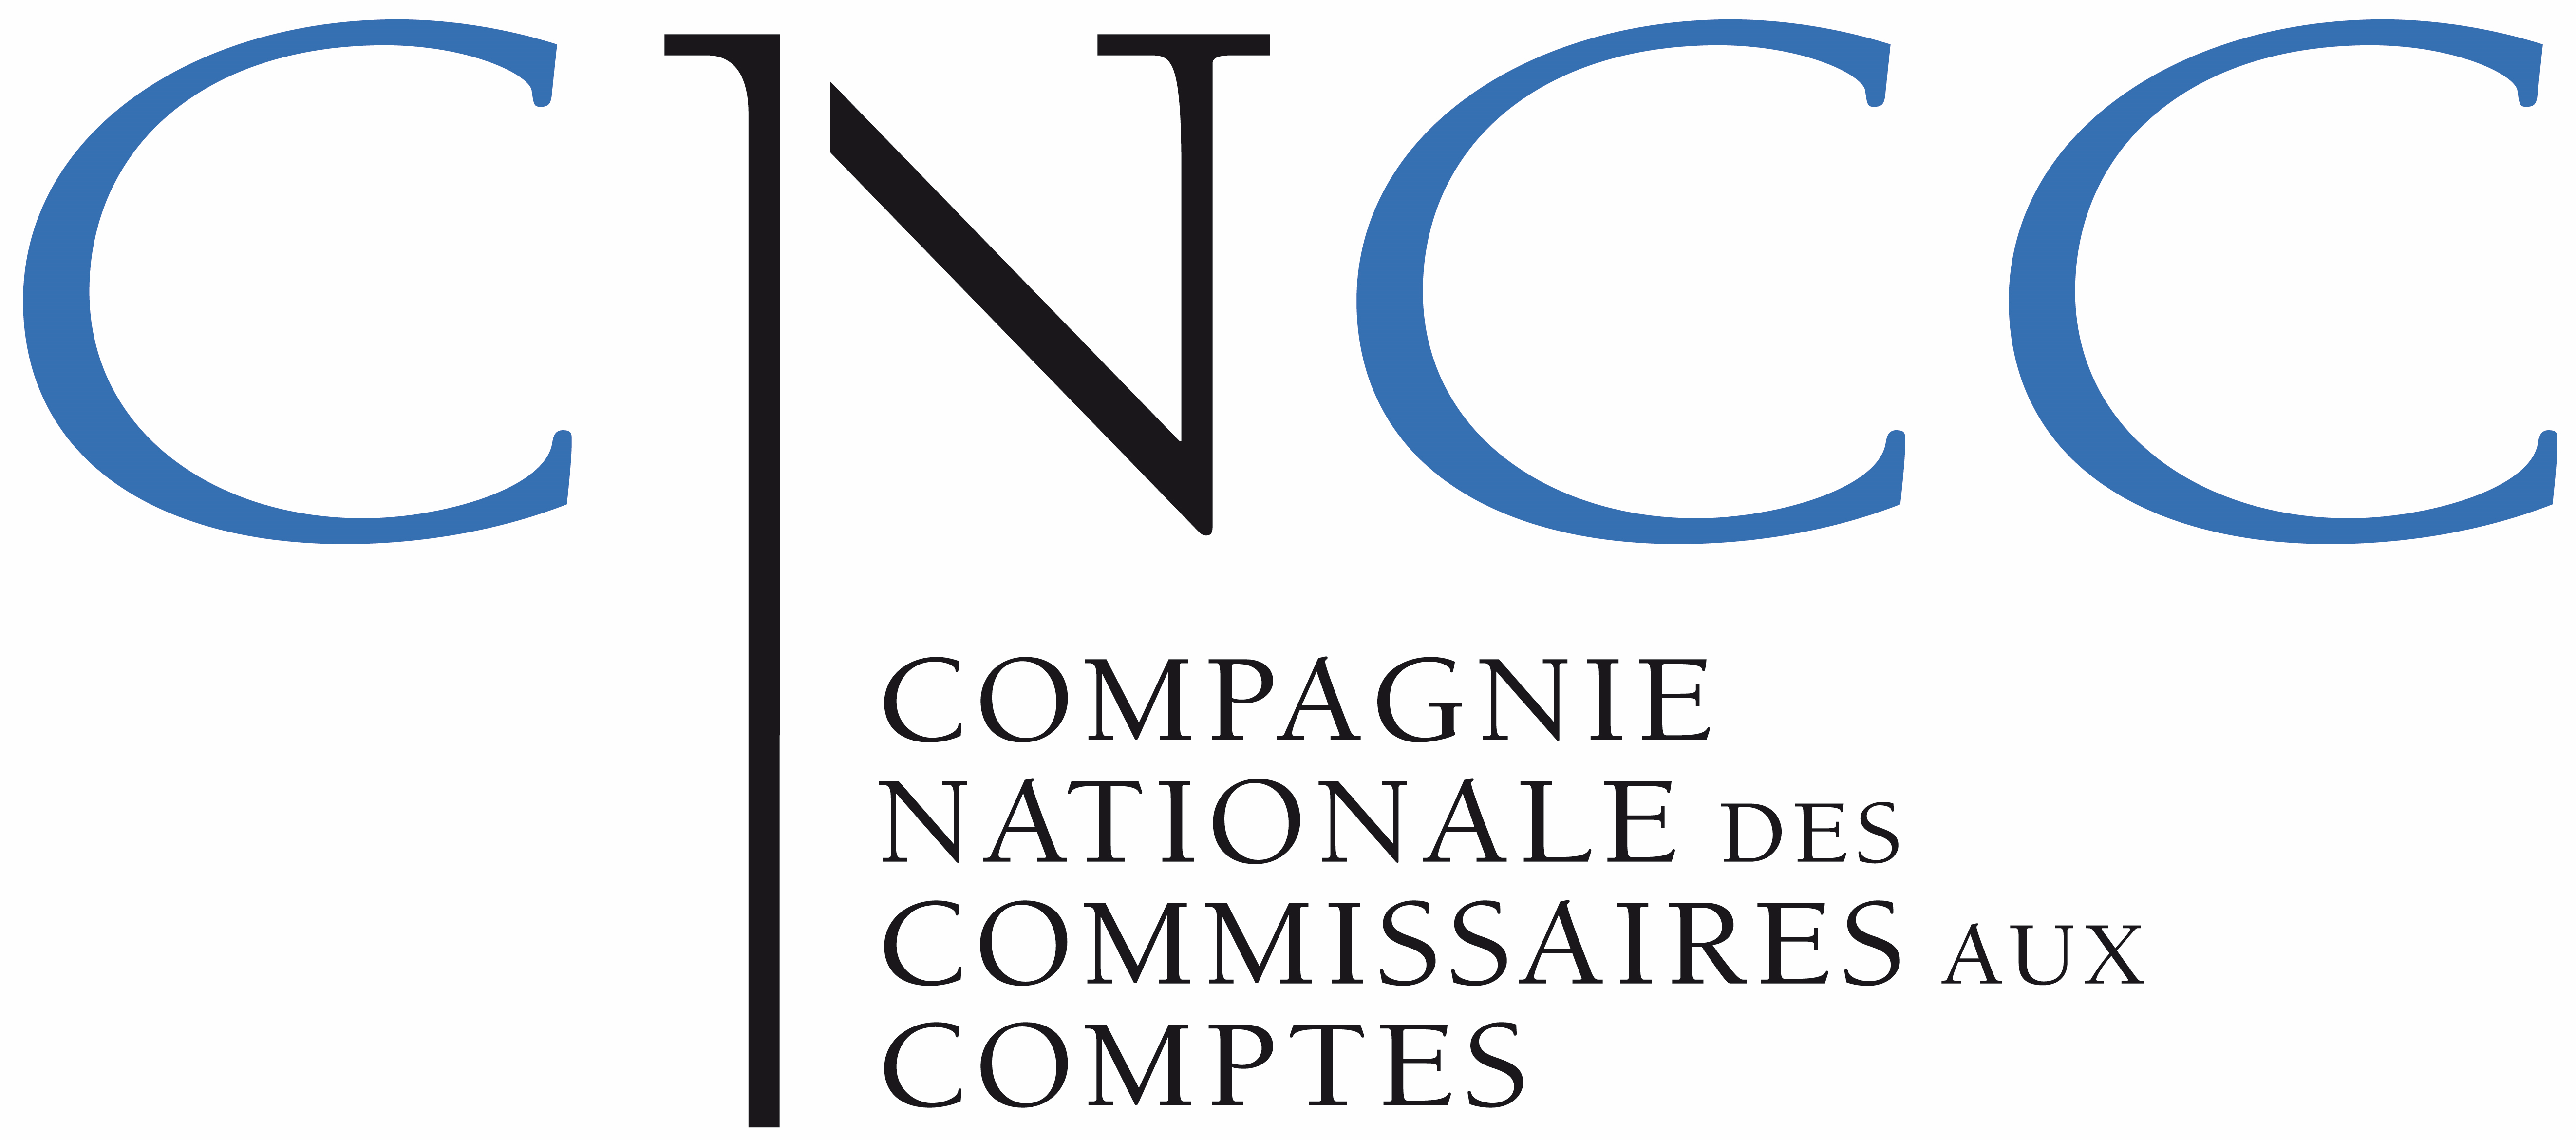 Compagnie Nationale des Commissaires aux Comptes (CNCC)